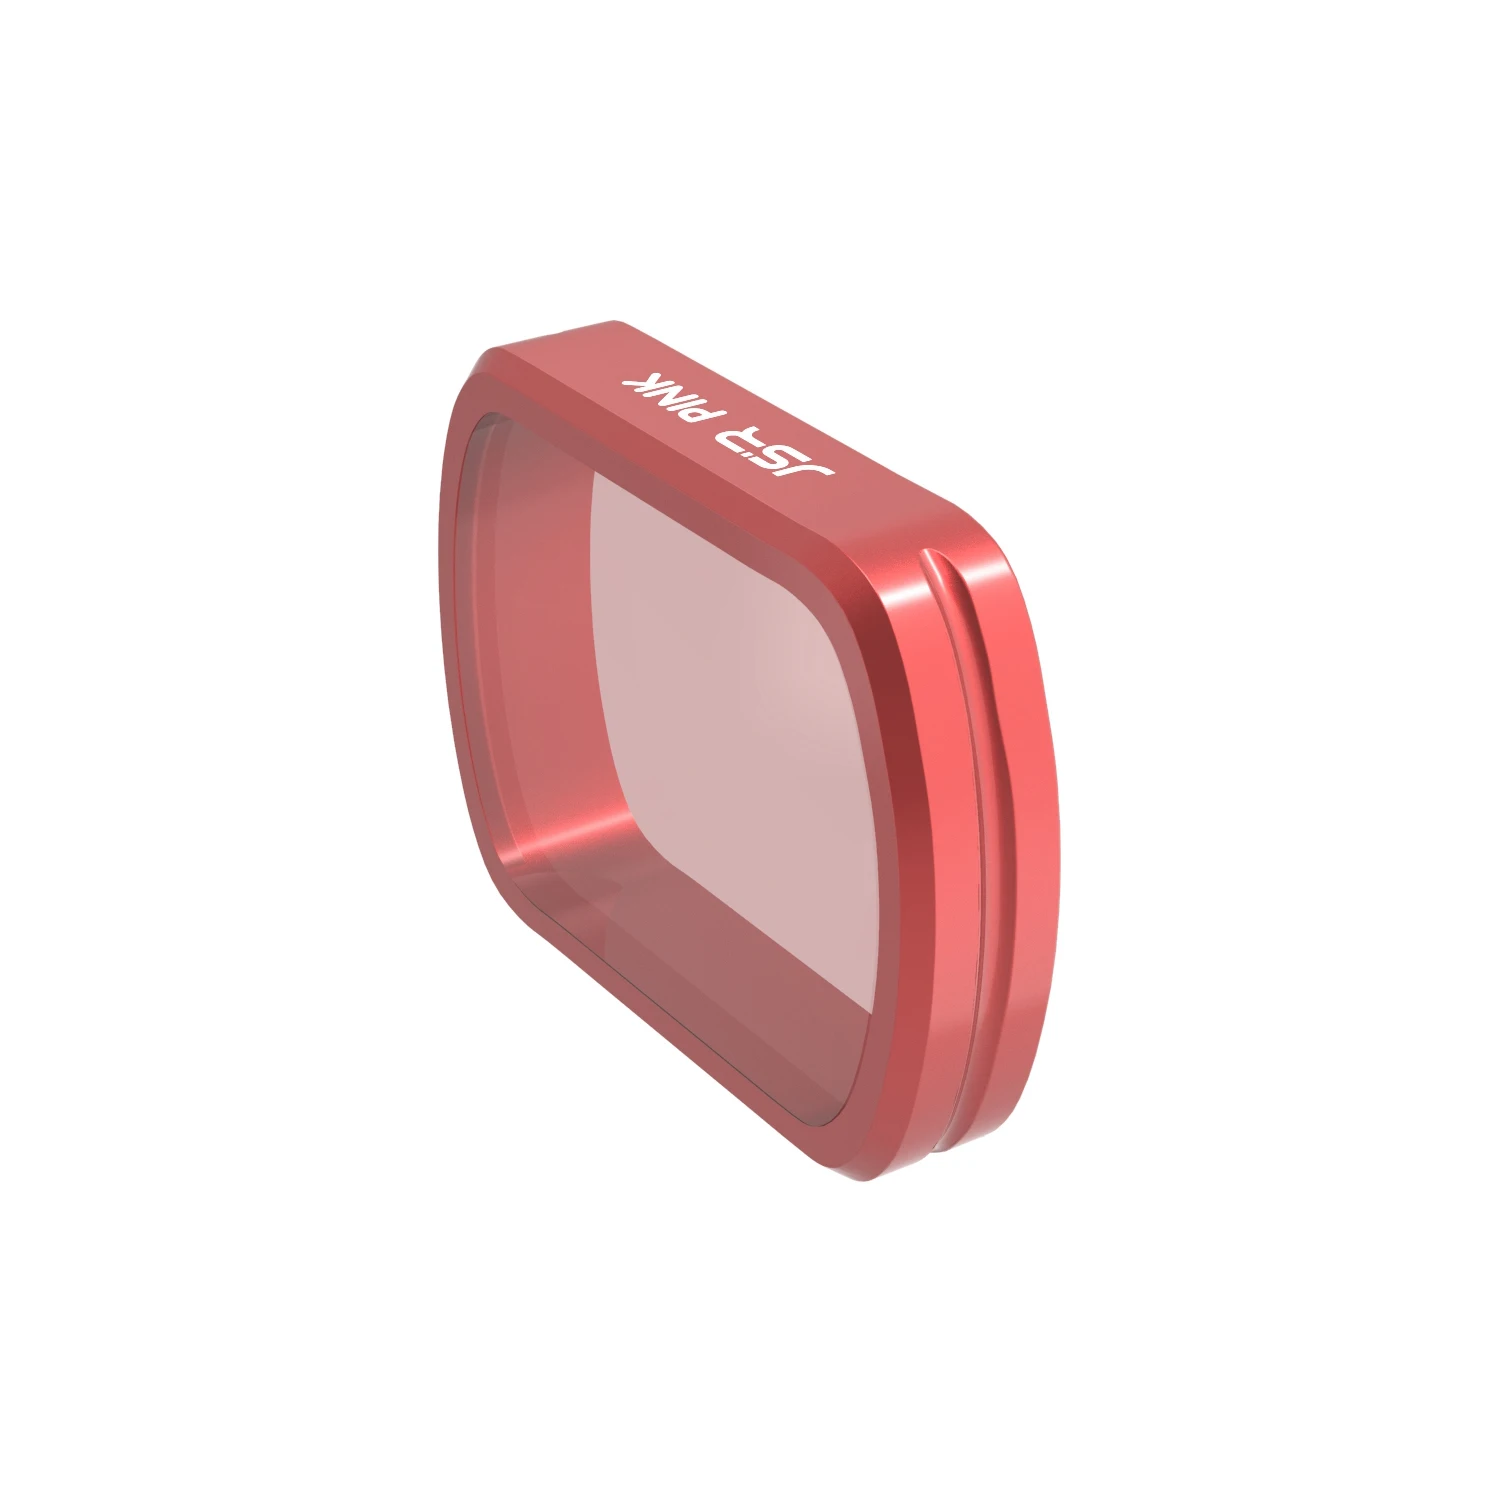 4в1 фильтр для дайвинга красный/розовый/пурпурный/желтый фильтр для объектива для DJI Osmo карманные Vlog фильтры для подводной съемки ручные стабилизаторы аксессуары - Цвет: Розовый